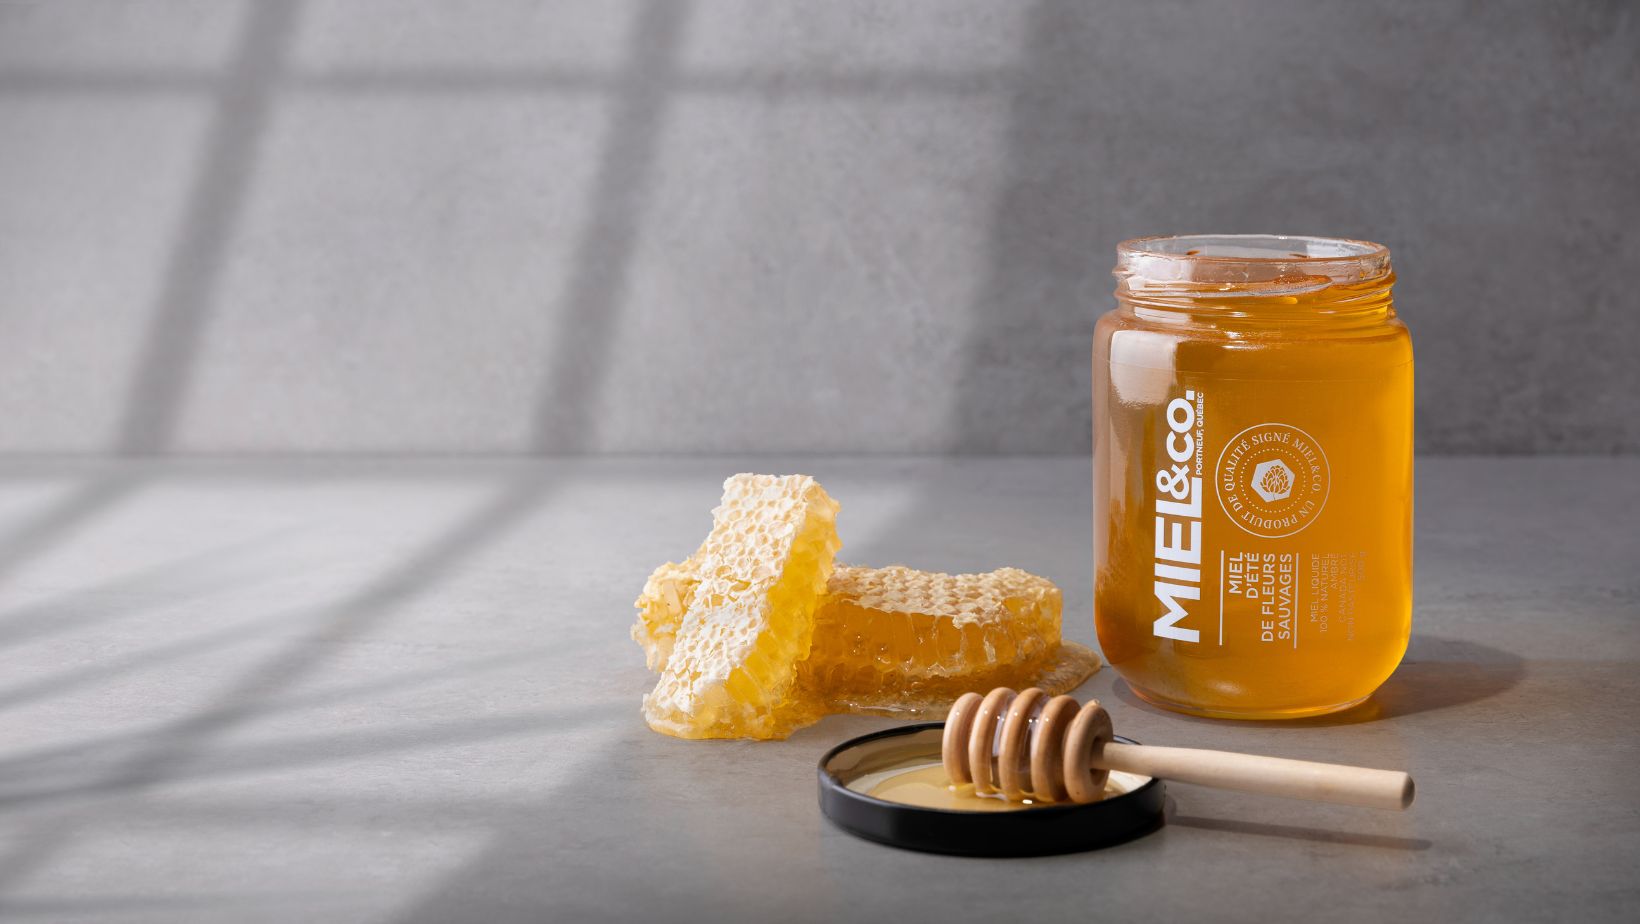 Le choix du miel en rayon, c'est goûter à l'authentique.